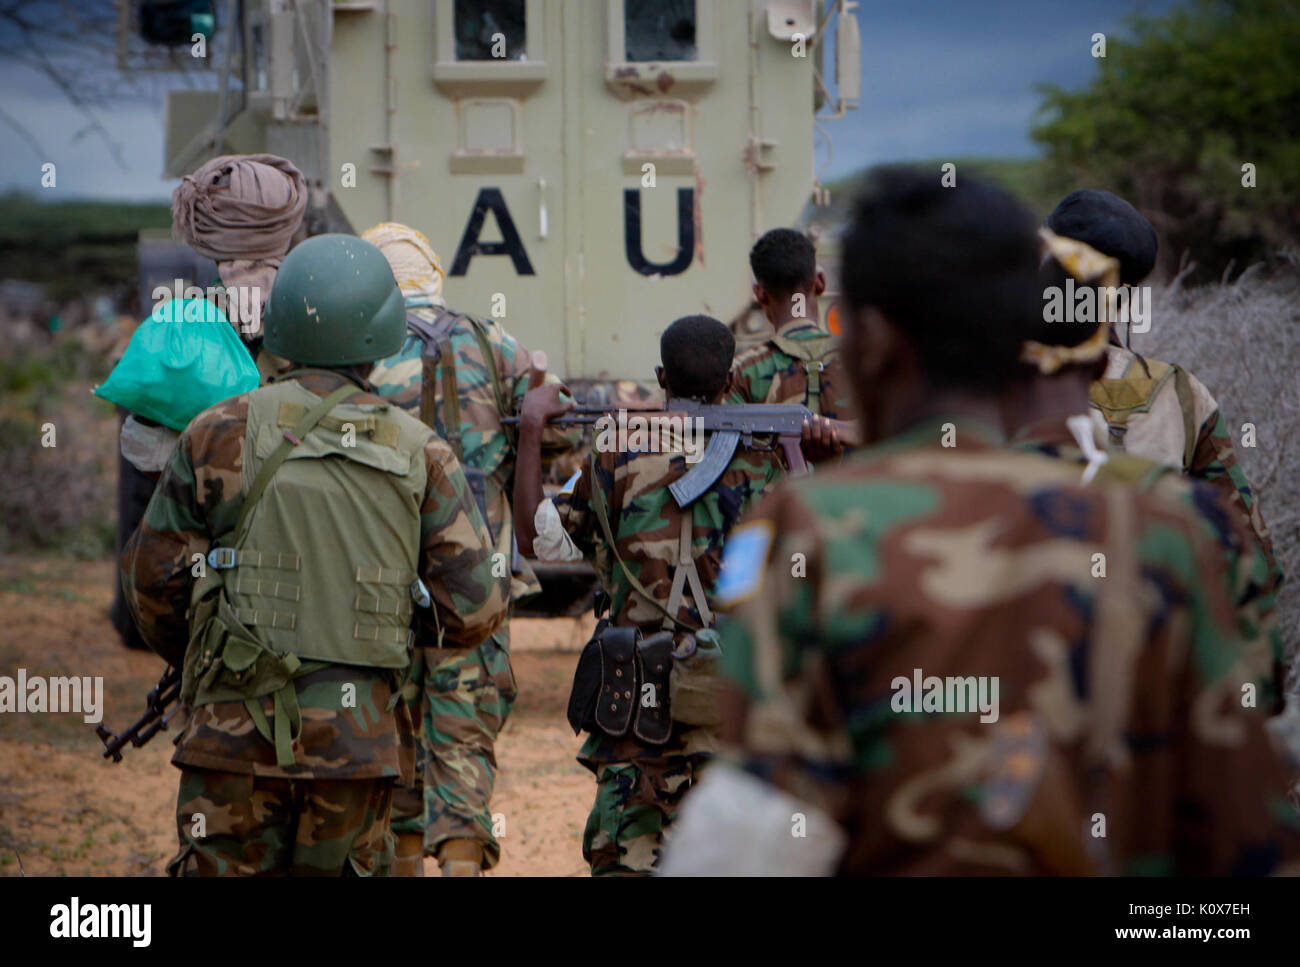 Die AMISOM&Somali National Army operation Afgoye Korridor 2. Tag 15 (7300508490) Stockfoto